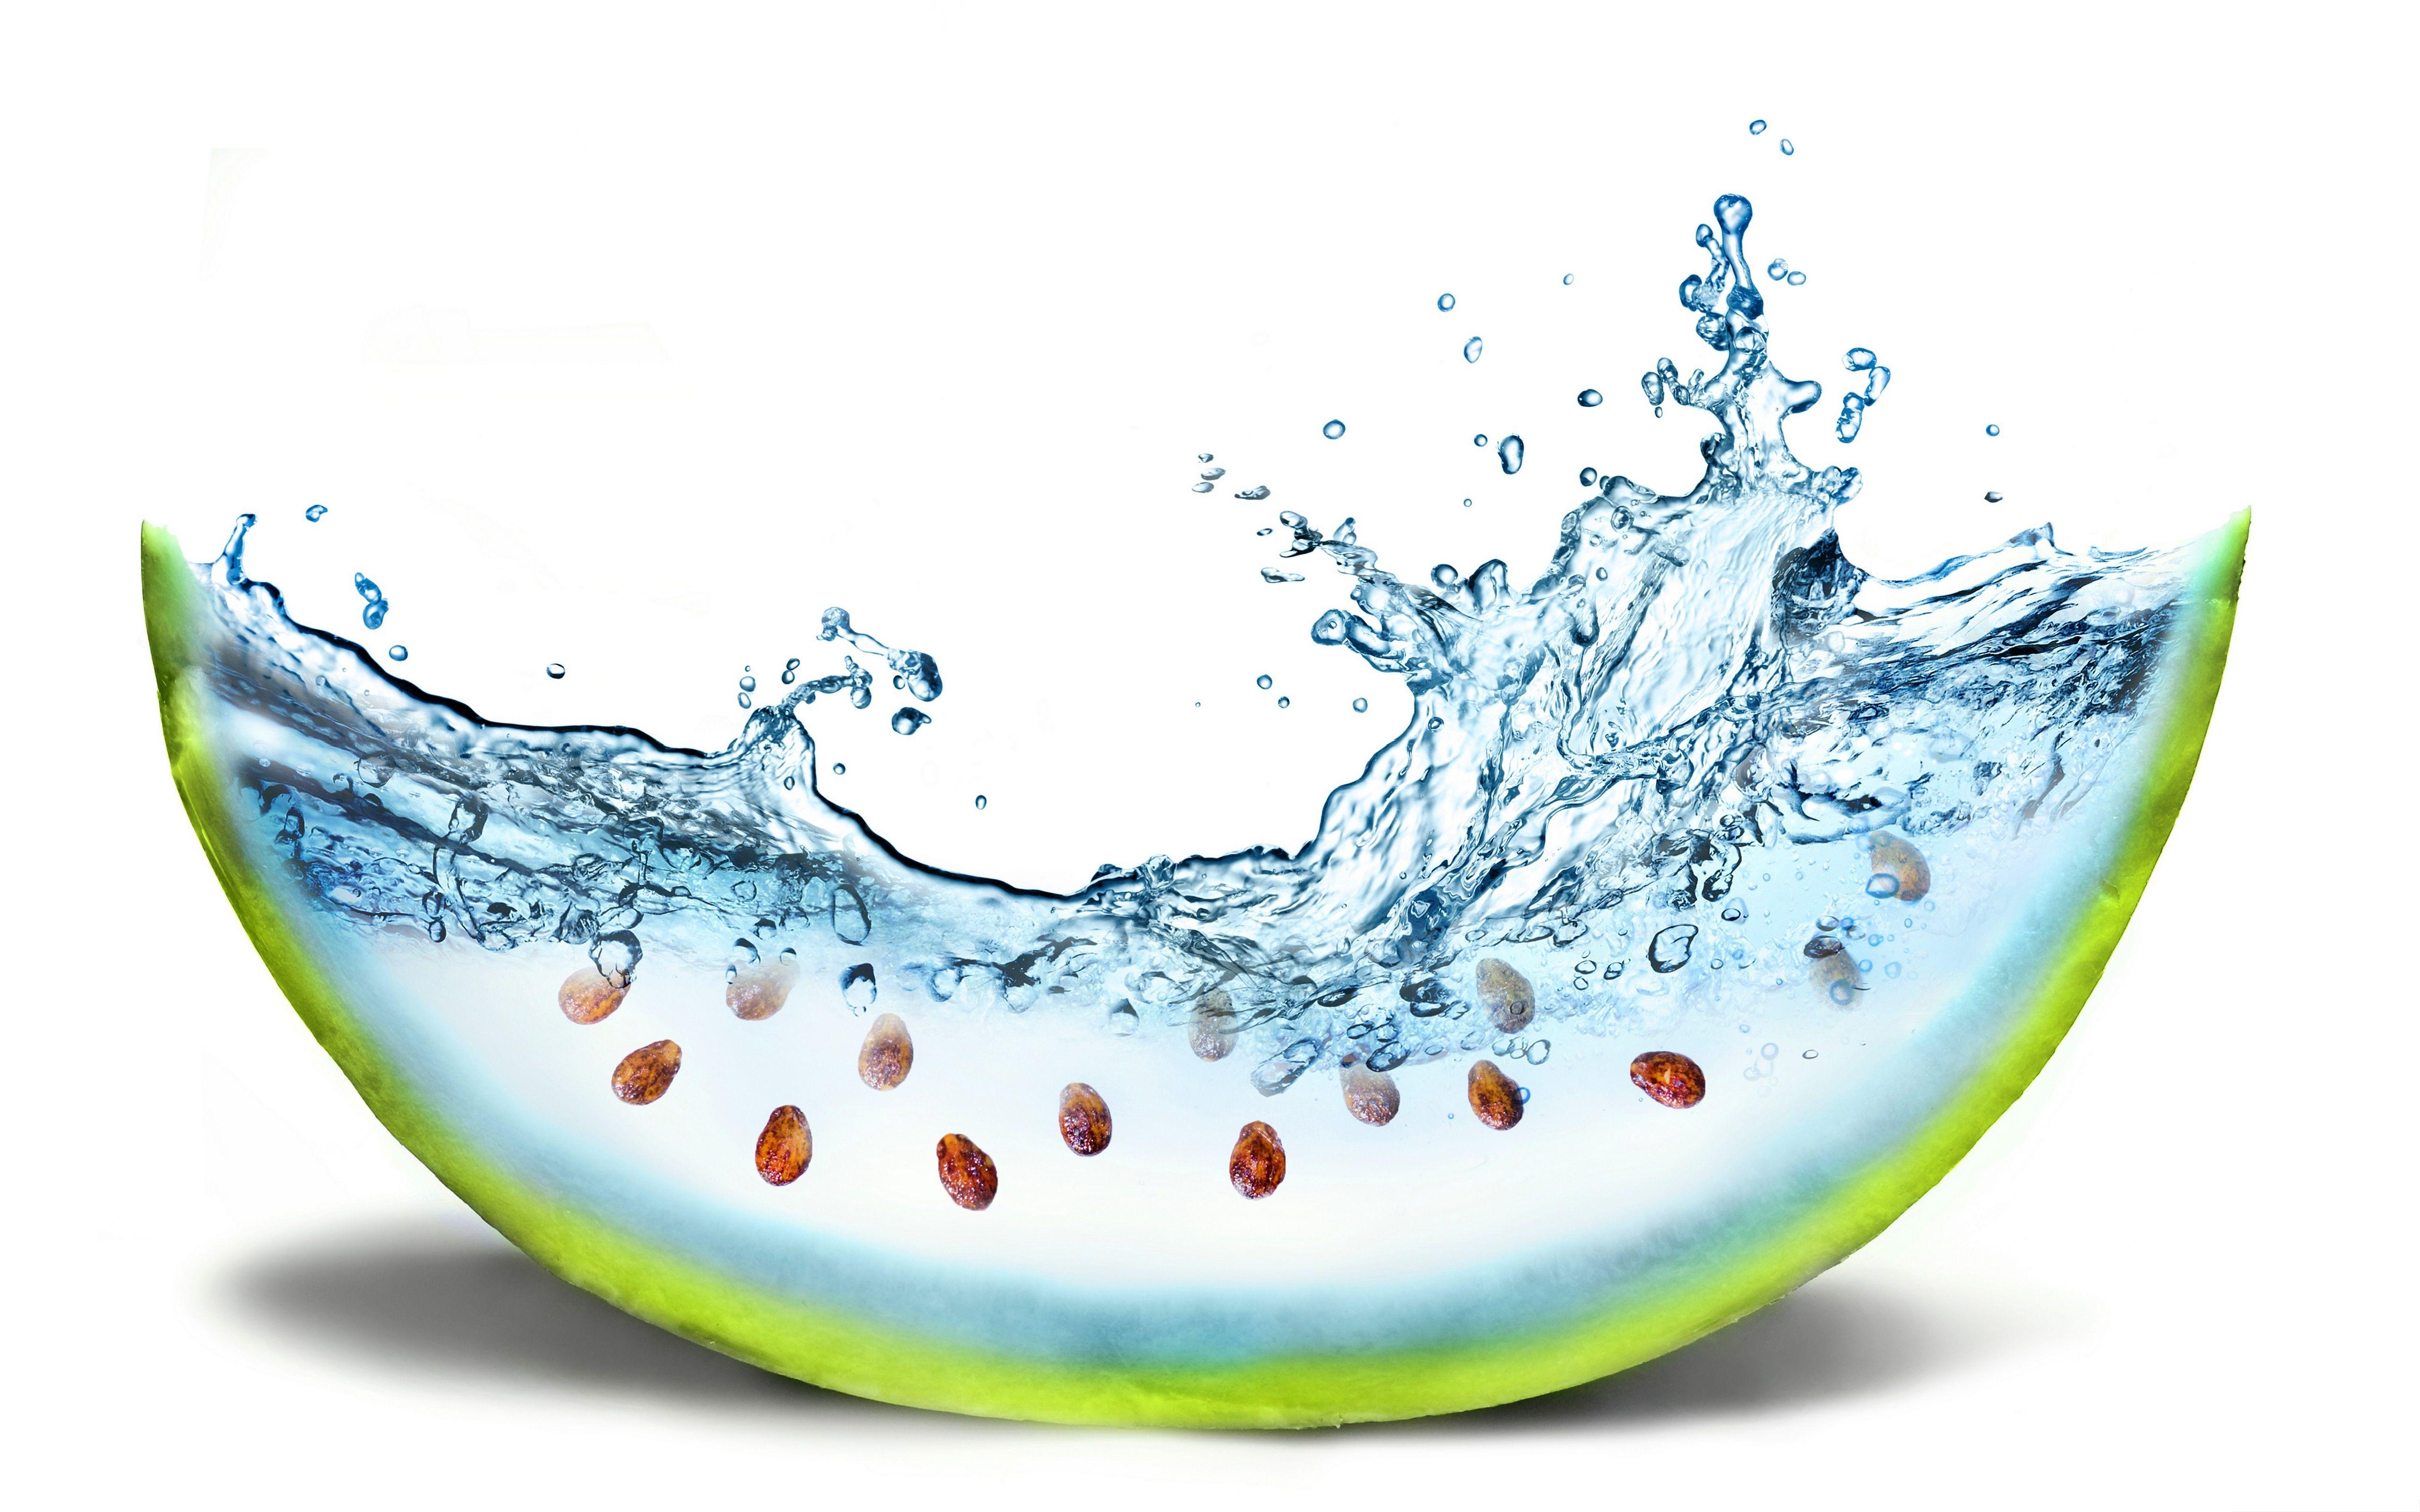 Fruit Water Splash Wallpaper, Quality Cool Fruit Water